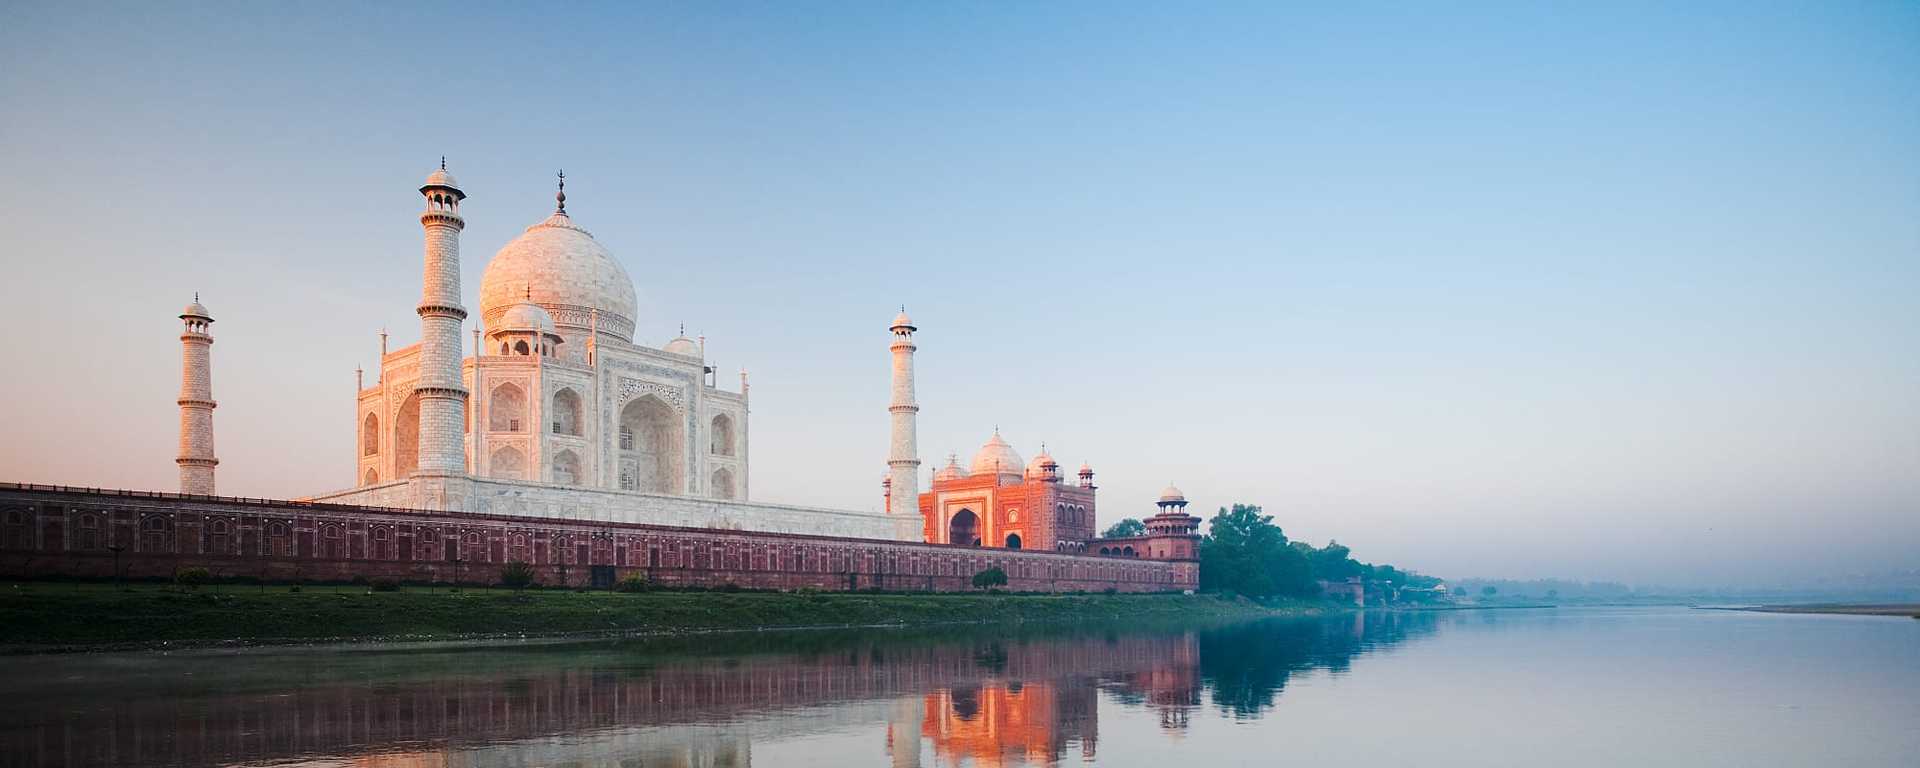 Agra's Taj Majal in India